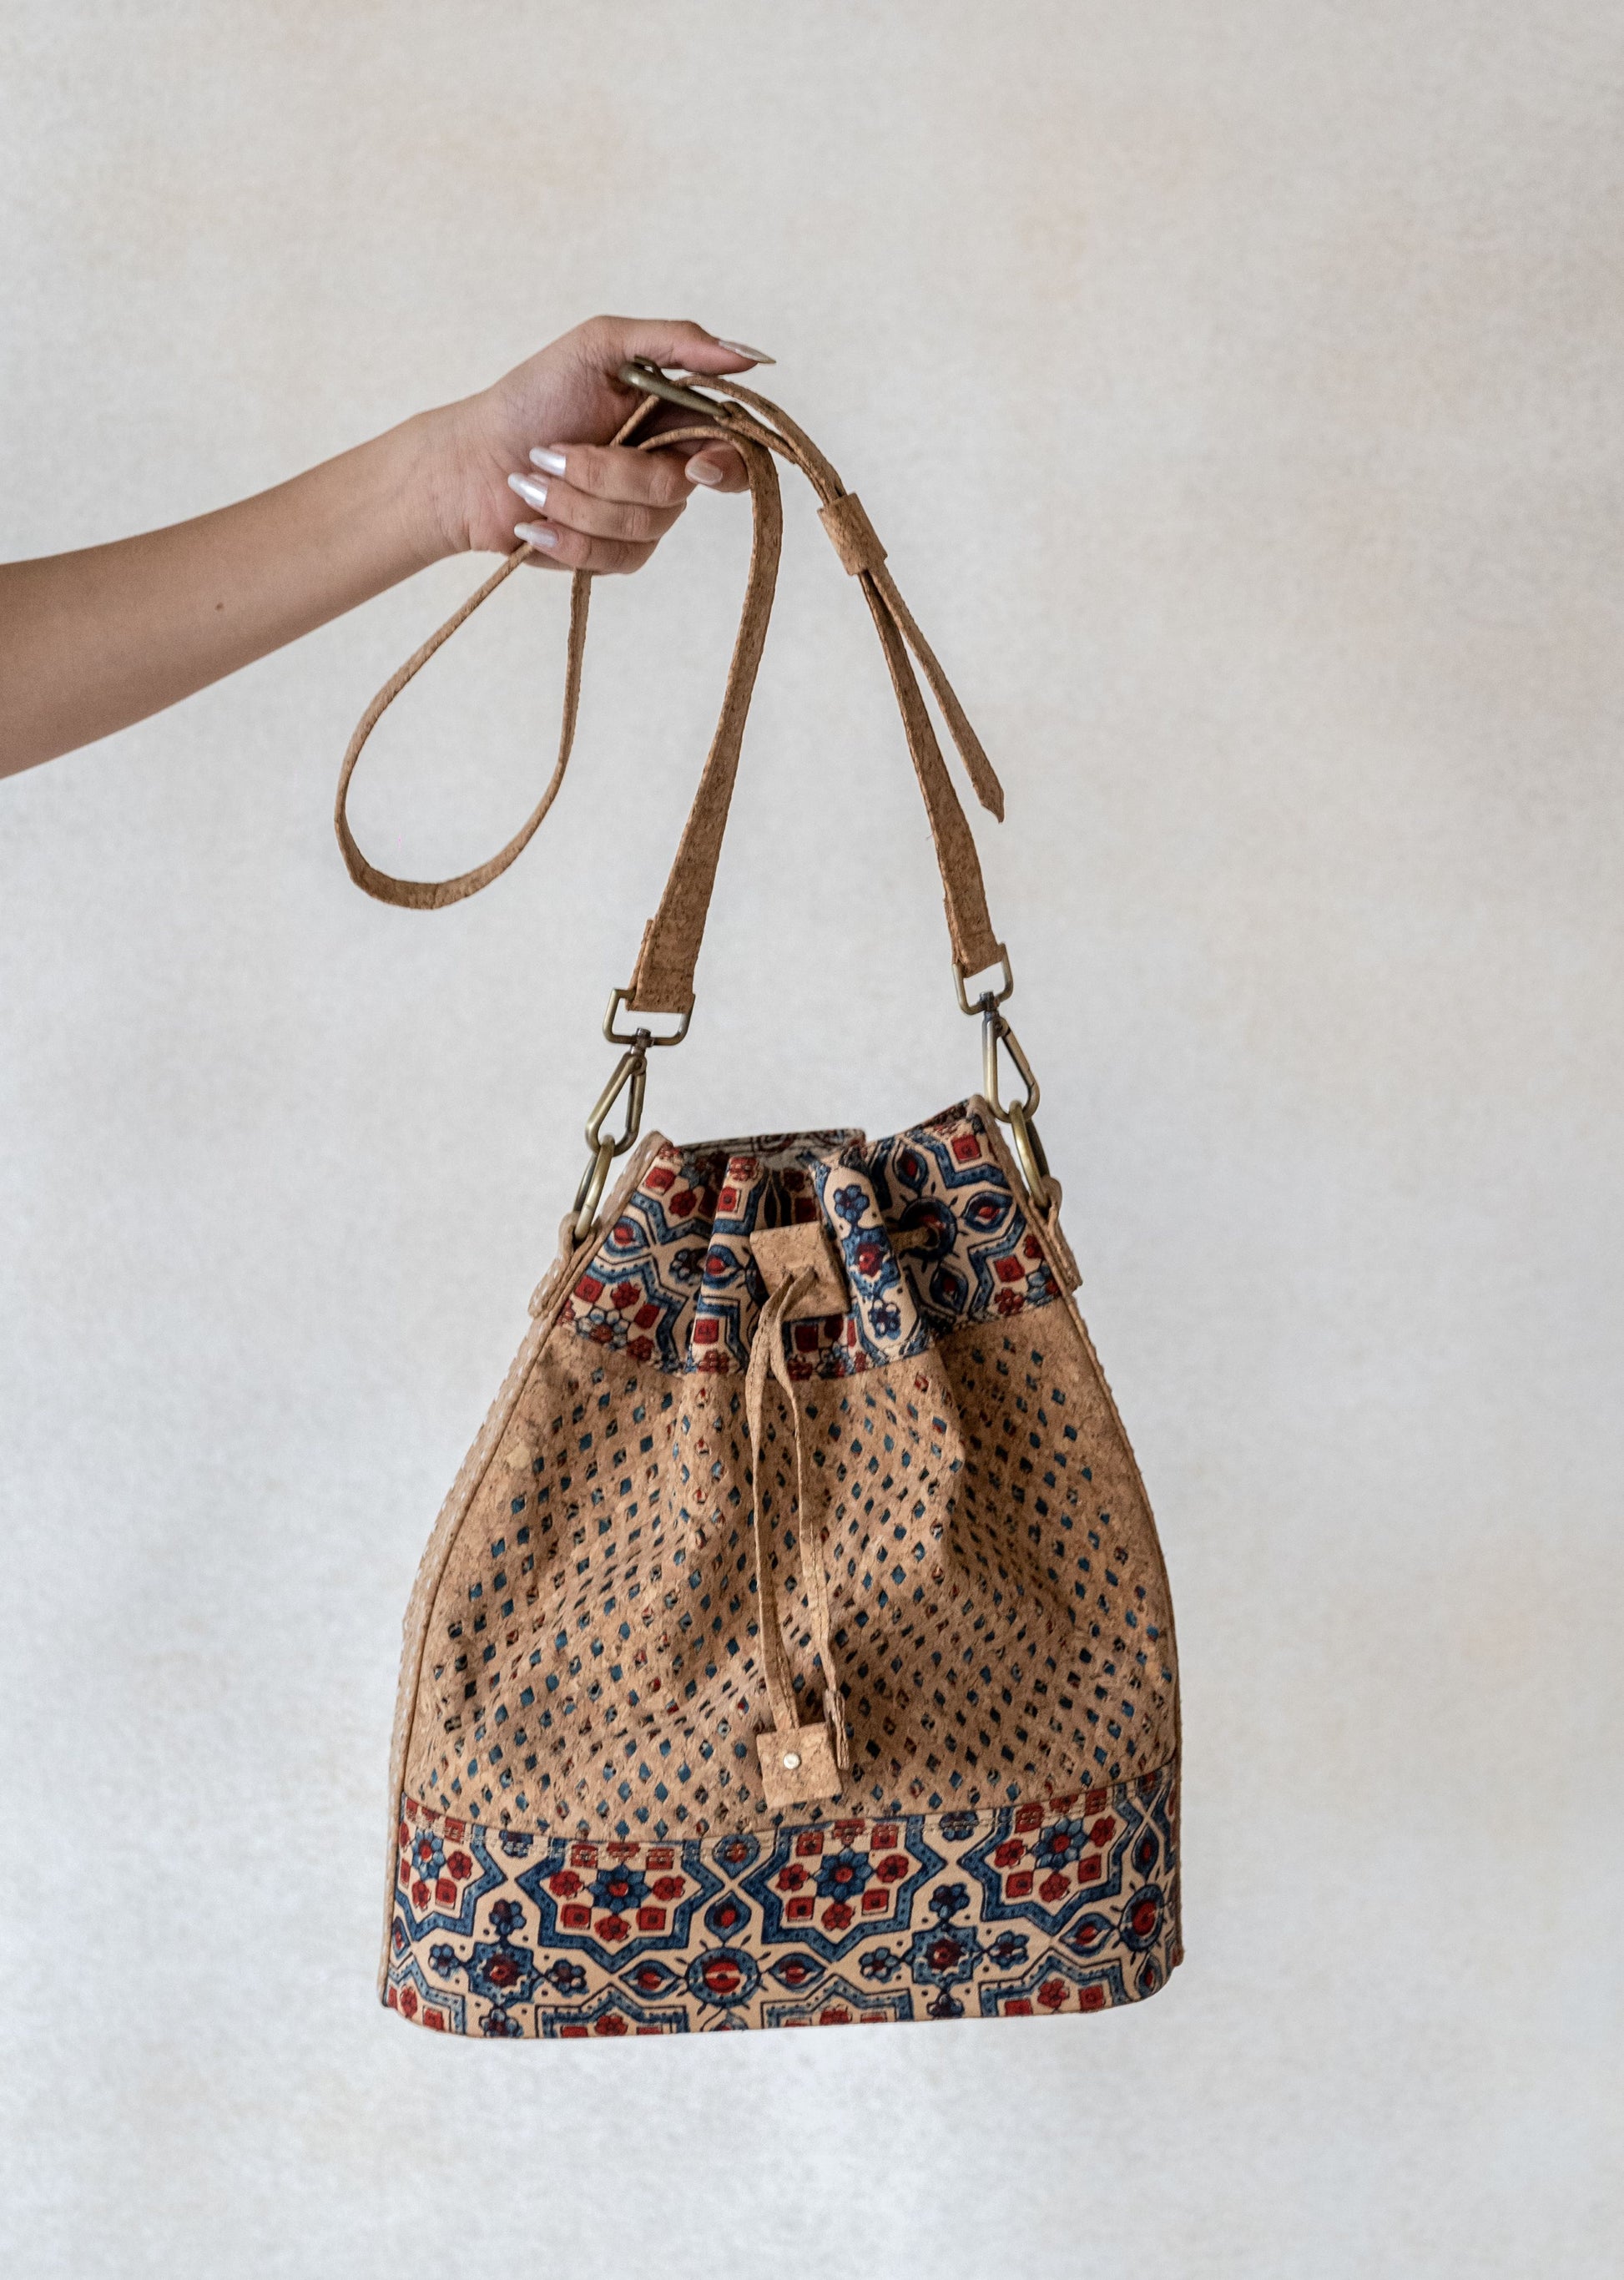 Cork bucket handbag, Handmade luxury cork handbag, Natural cork handbag